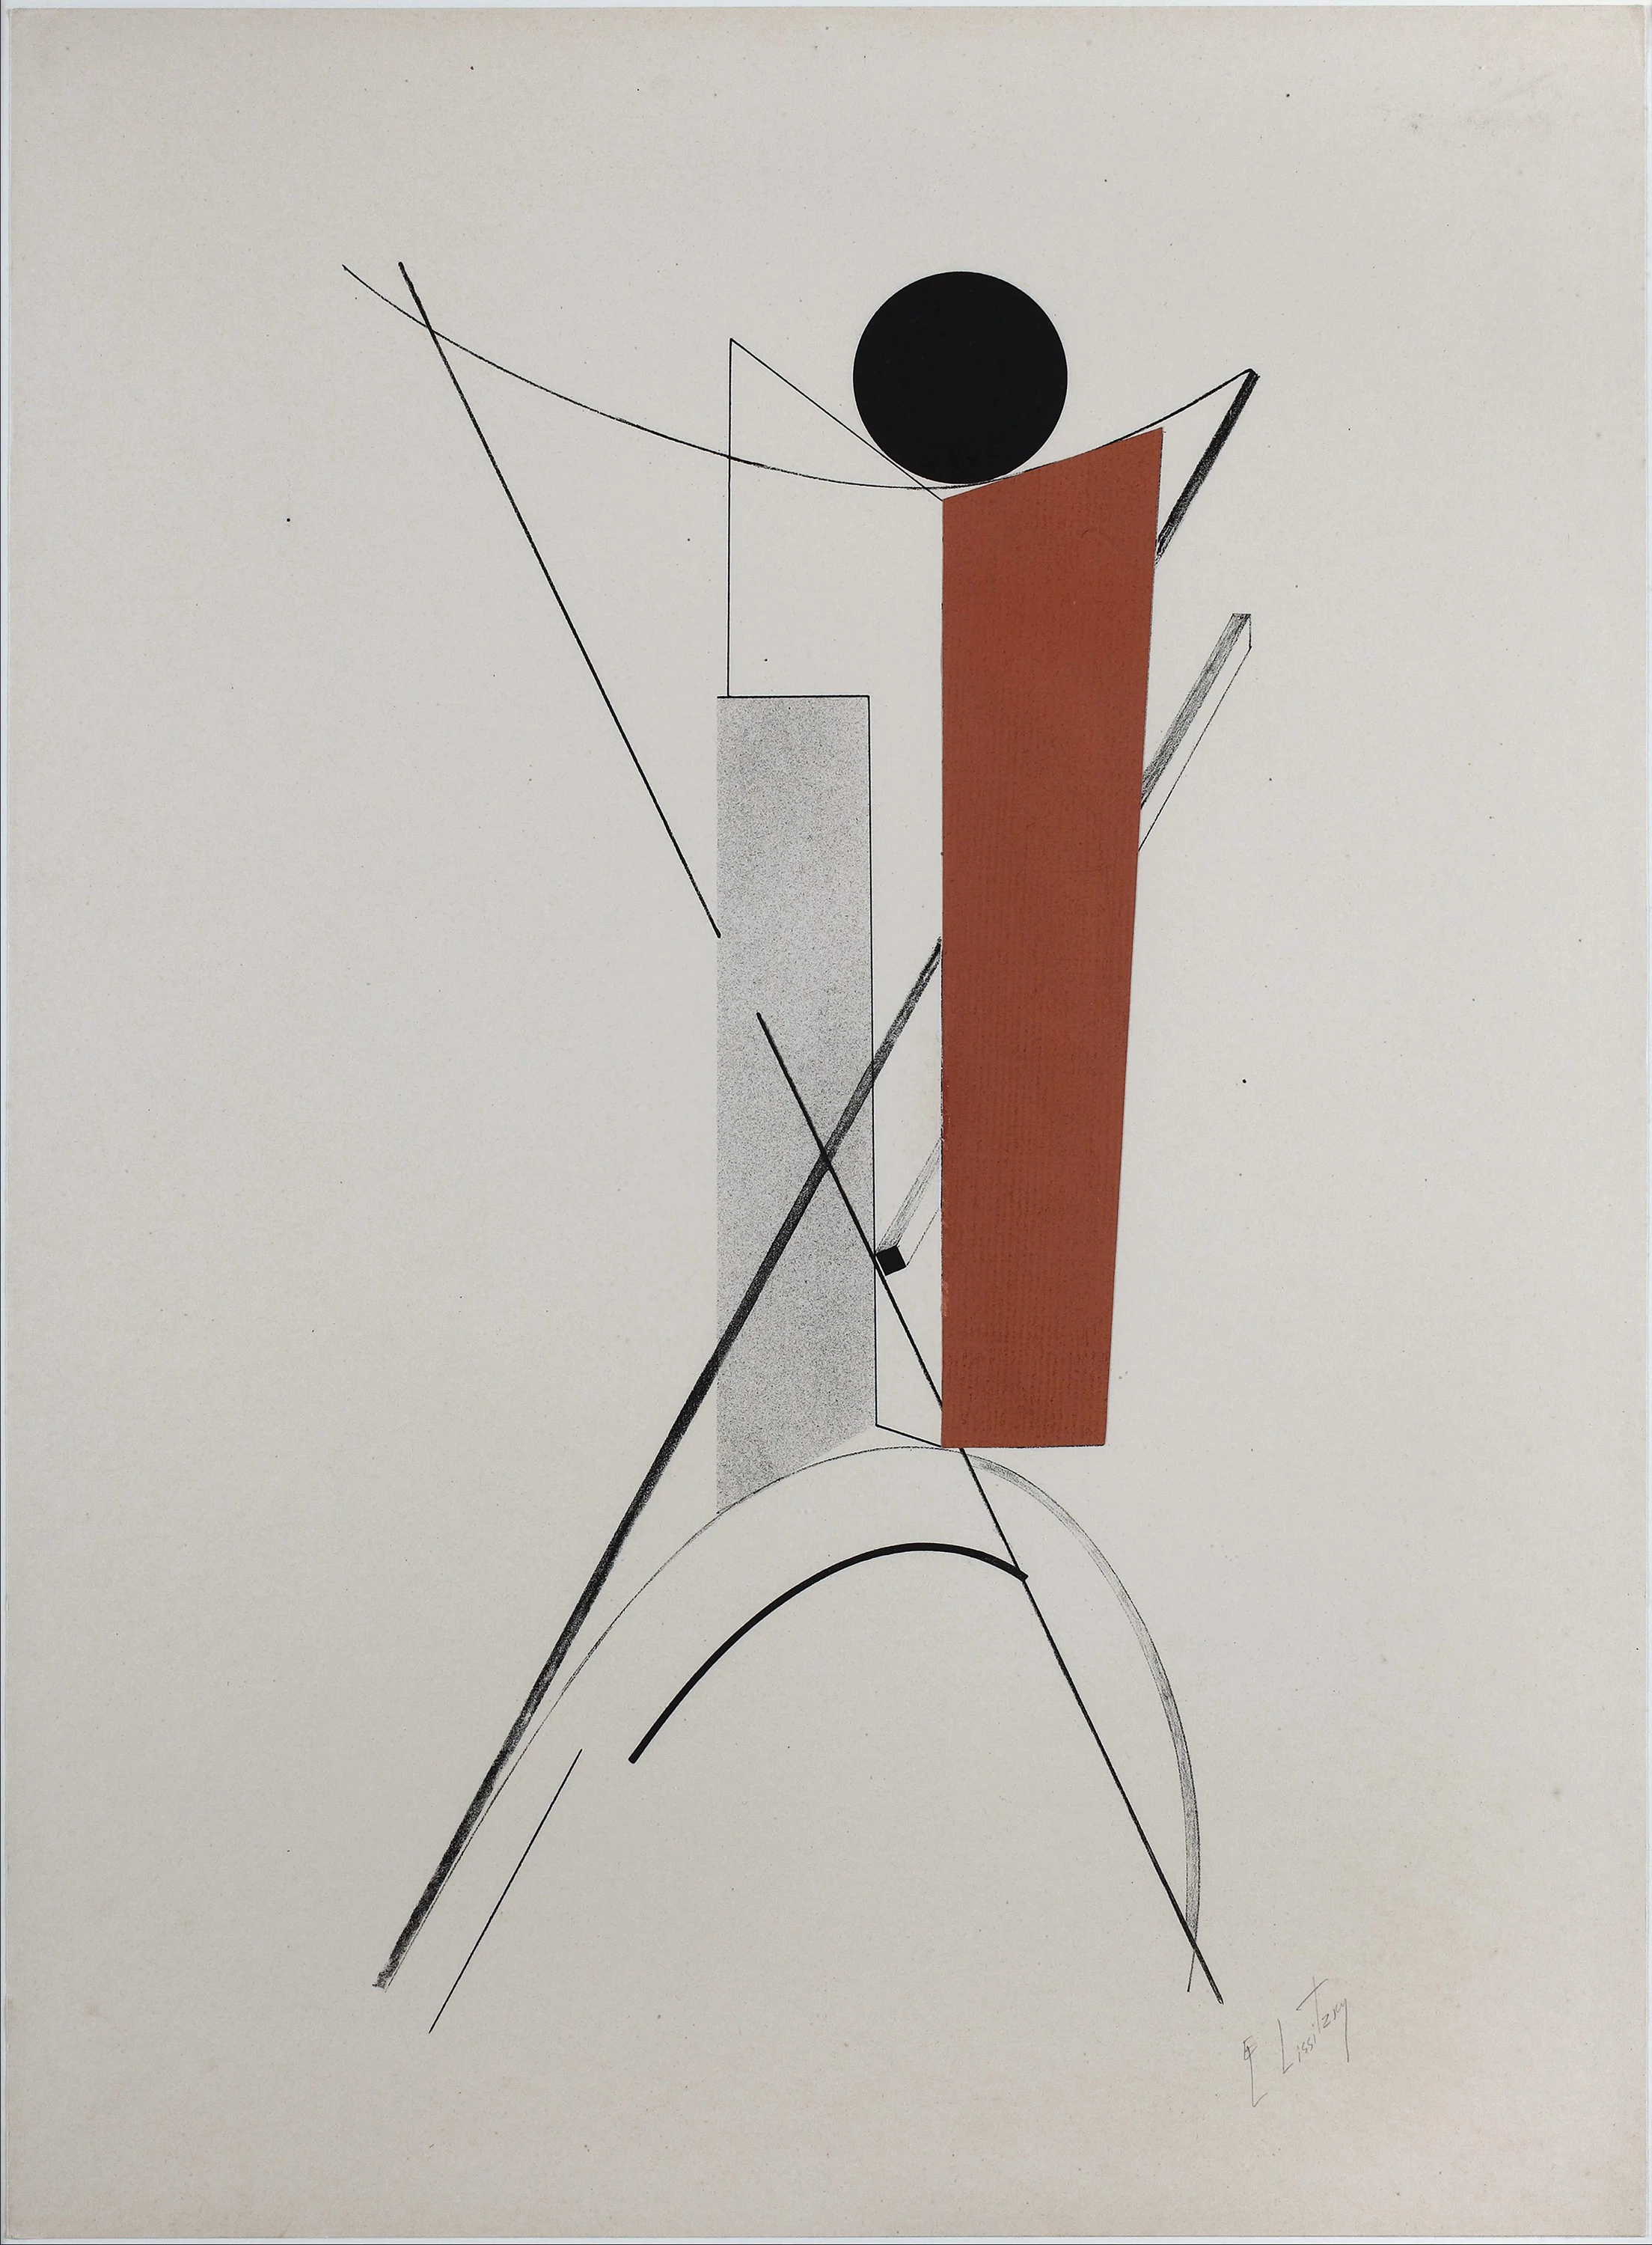 Kestner Portfolio, Proun 3, El Lissitzky